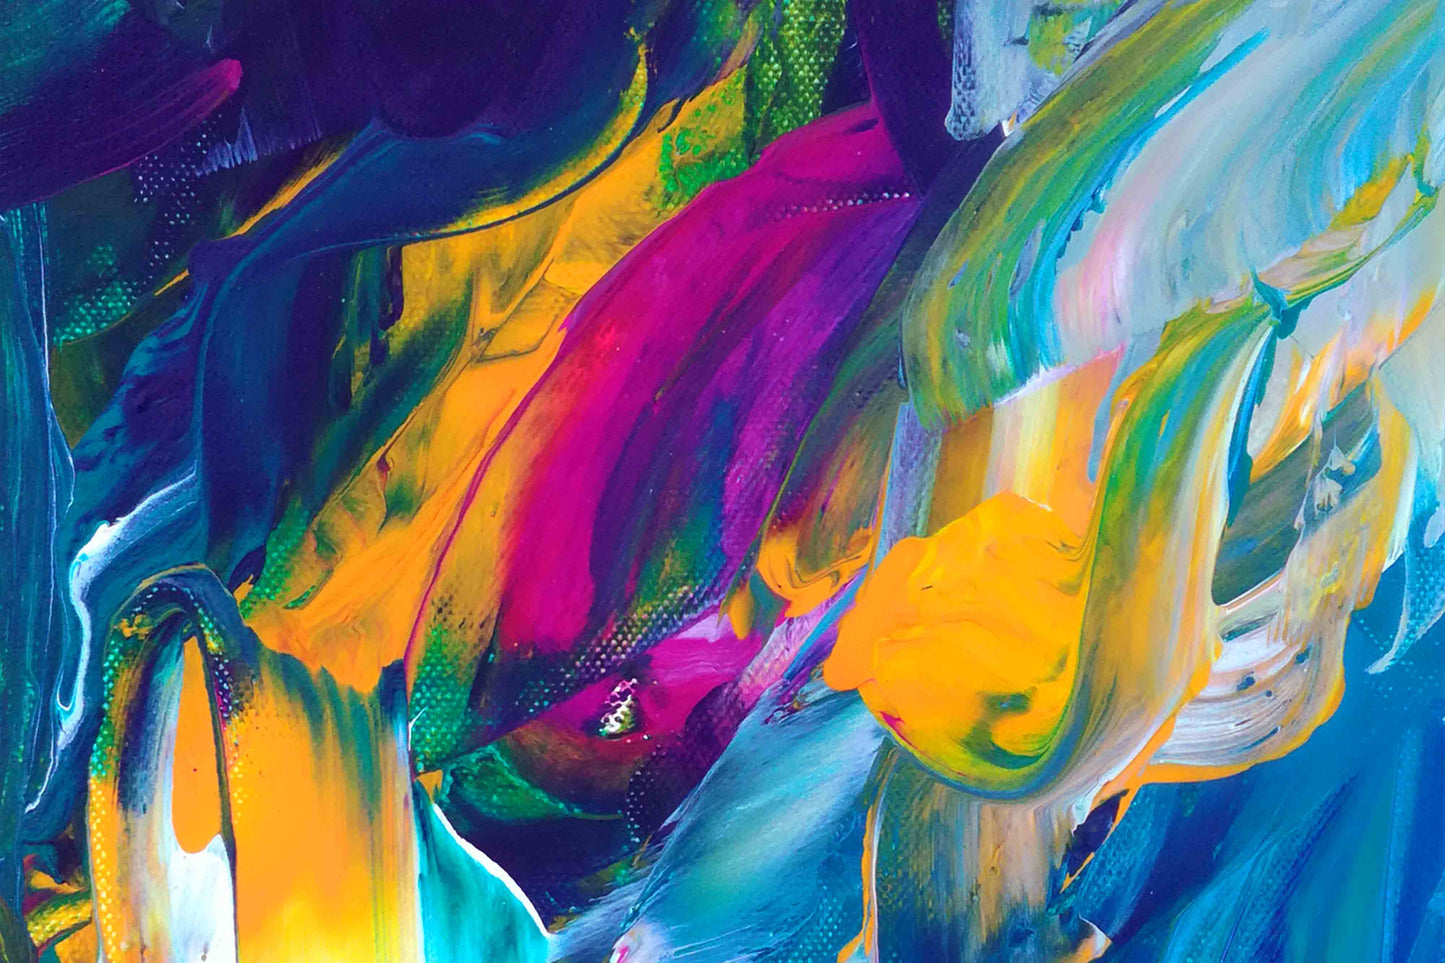 Motiv Kuscheldecke DSCHUNGLE Größe: 100 x 70 cm, Farben: Pink, Kobalt - Blau, Sonnengelb, Grün